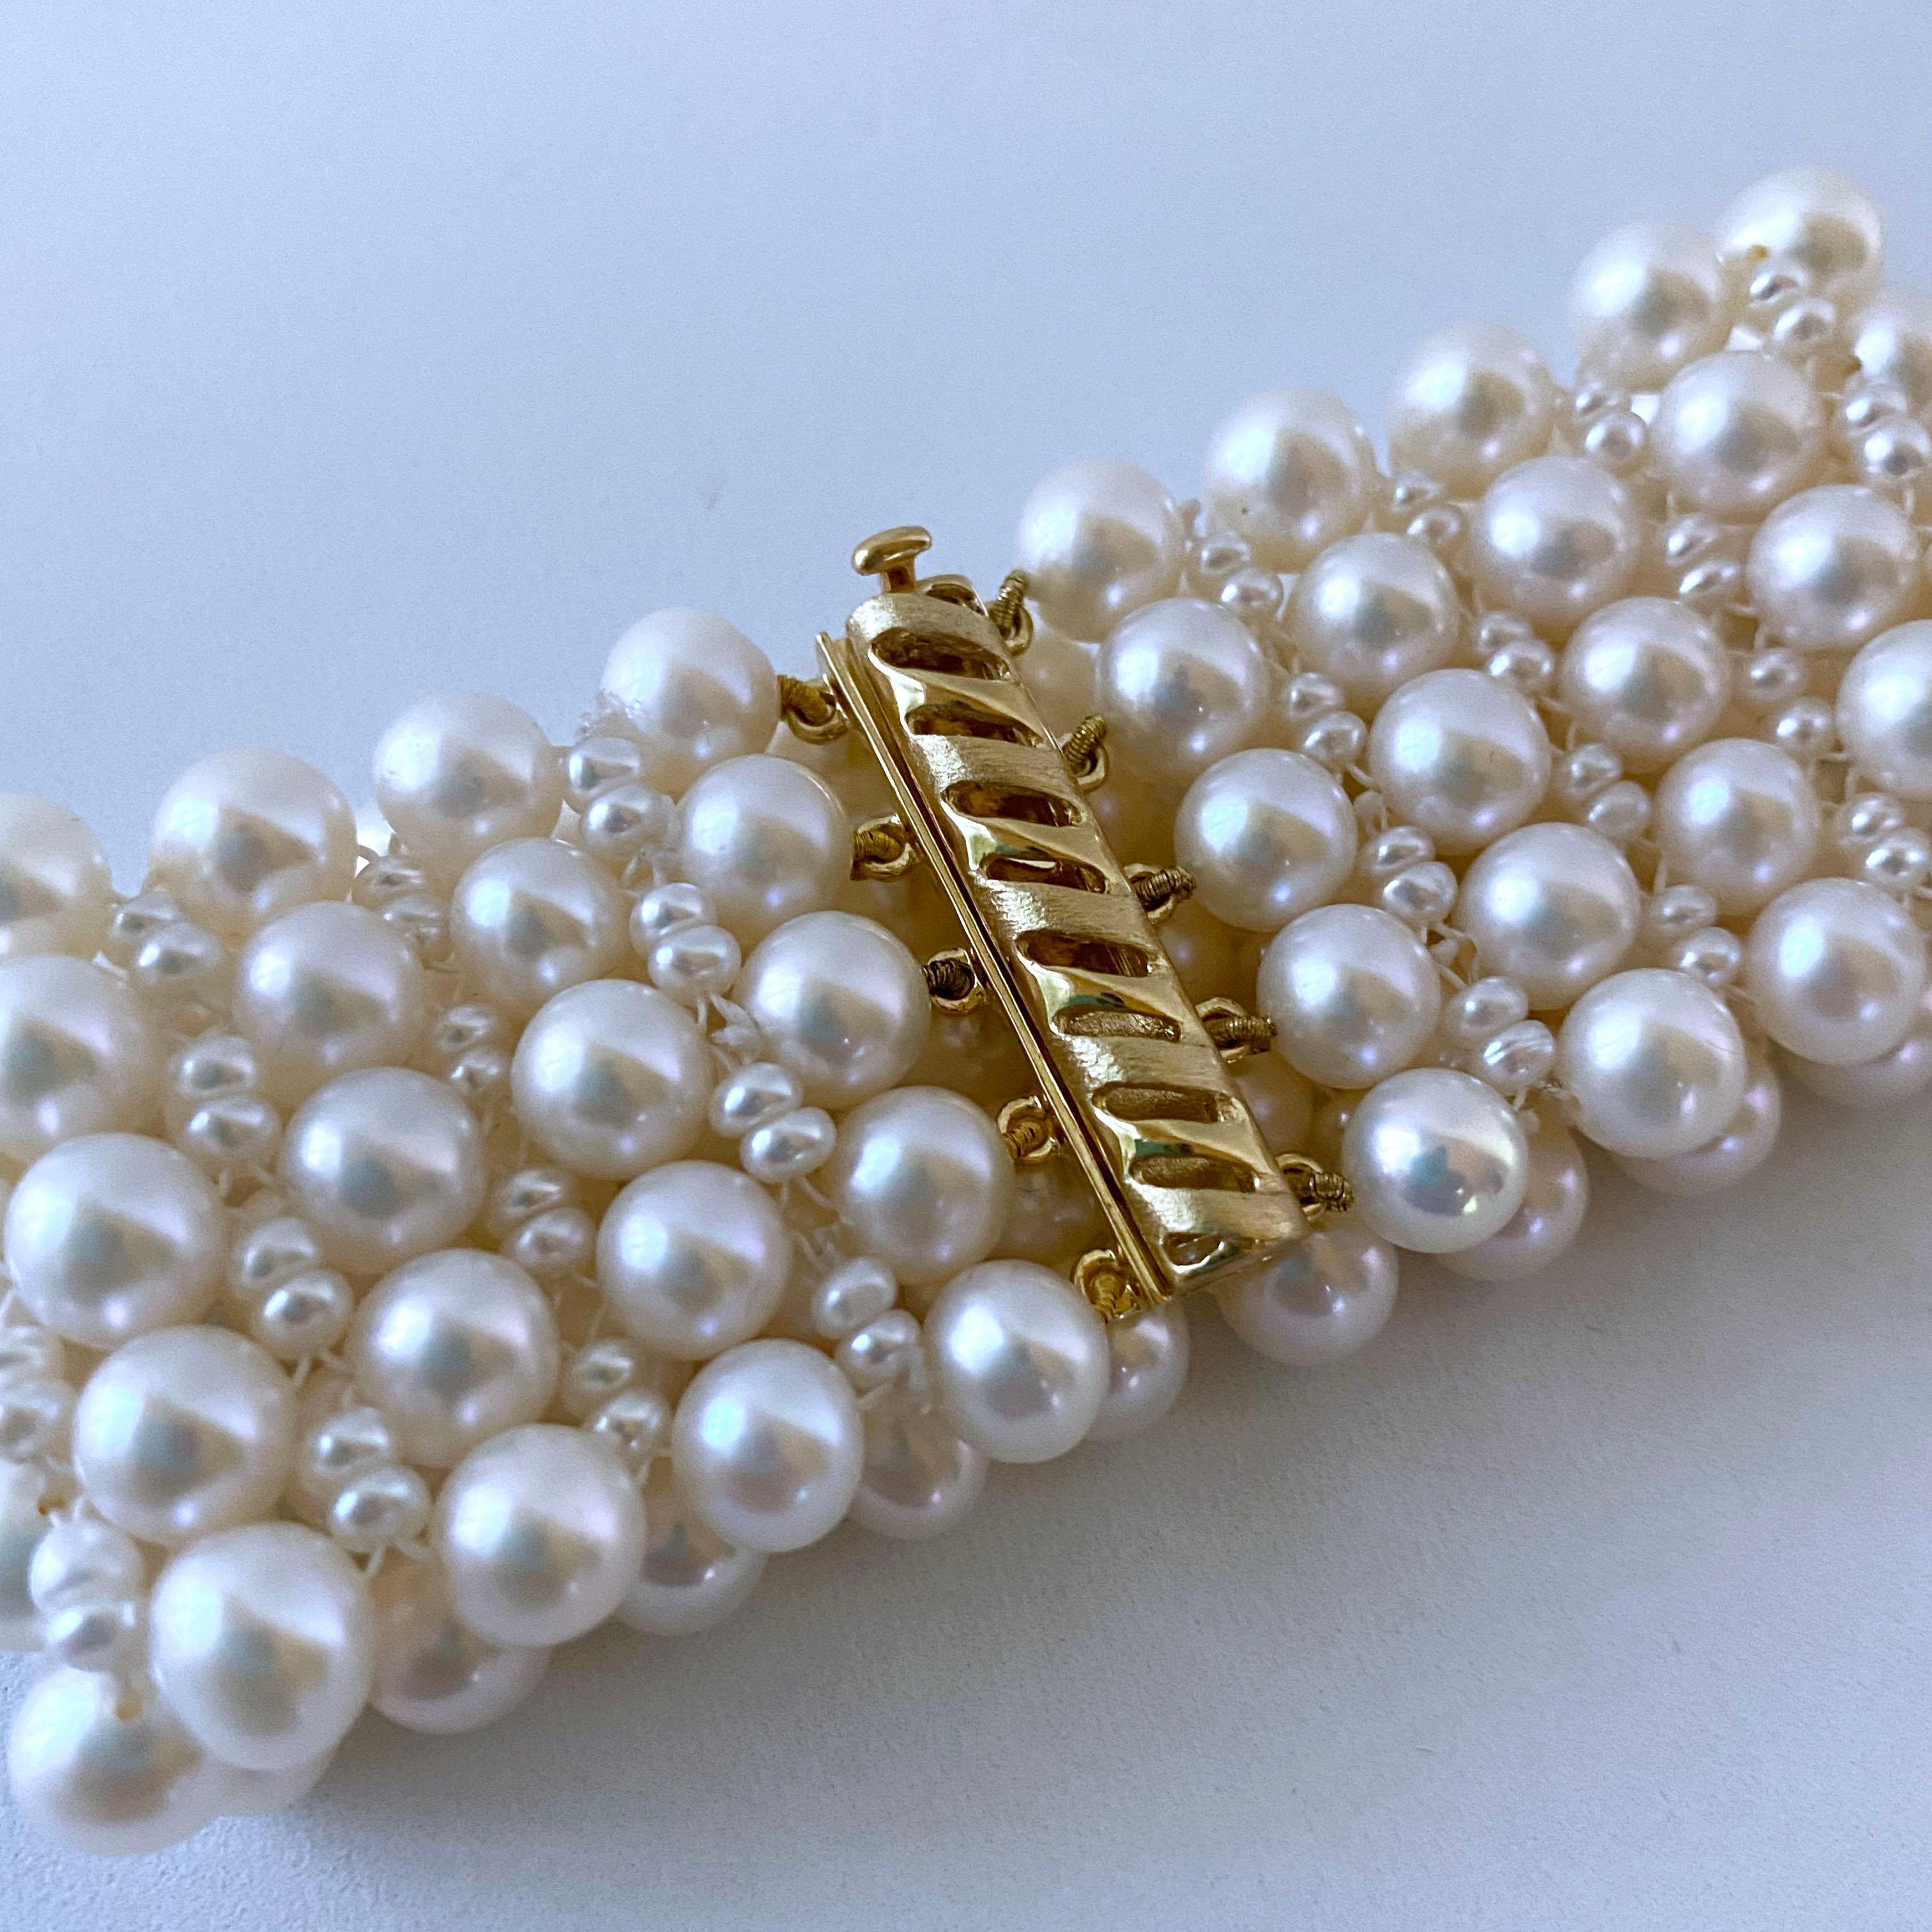 Magnifique pièce classique de Marina J. Ce bracelet est composé de perles blanches de culture de taille multiple, d'un doux éclat irisé, toutes tissées ensemble de façon complexe pour former un fin motif de dentelle. Le tissage de la dentelle donne